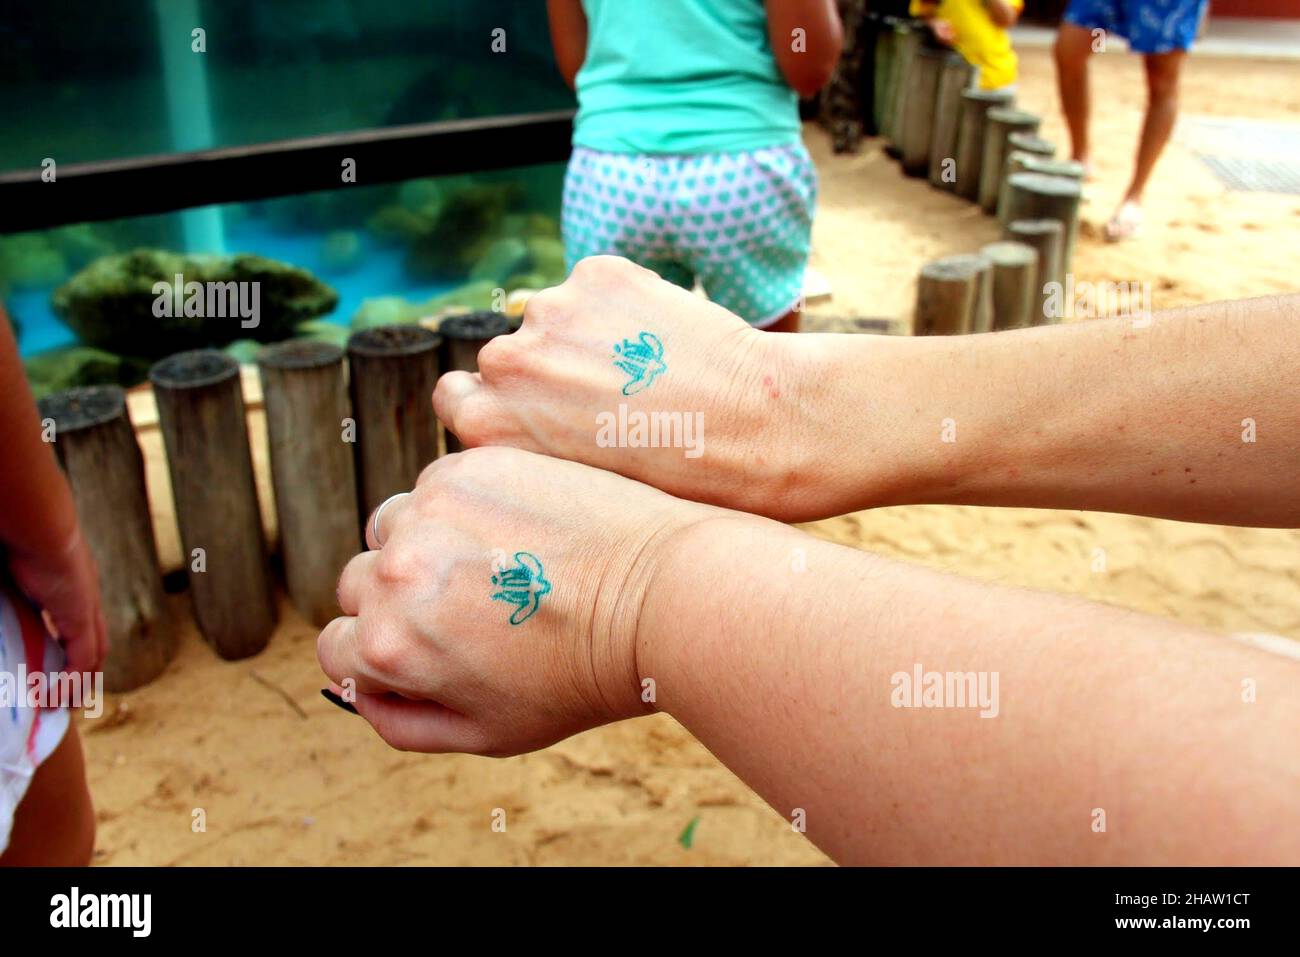 Tamar Project: Parkeingang, waschbares, ökologisches Tattoo auf der Rückseite zweier weiblicher Hände. Praia do Forte, Mata de São João - Bahia. Juli 2013. Stockfoto